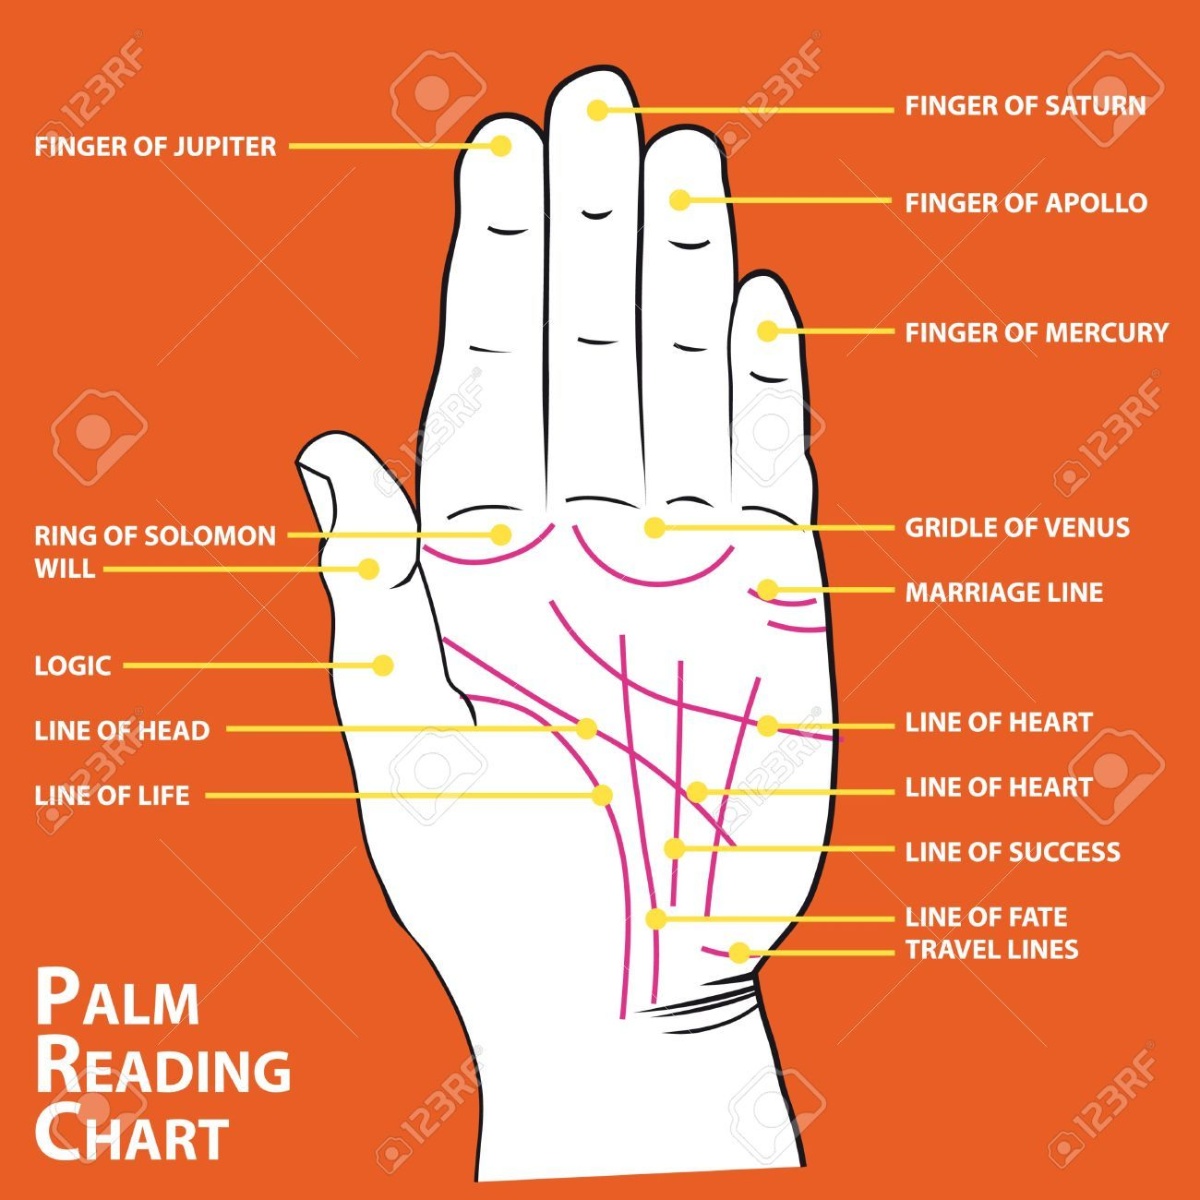 linea de la salud quiromancia lectura de manos